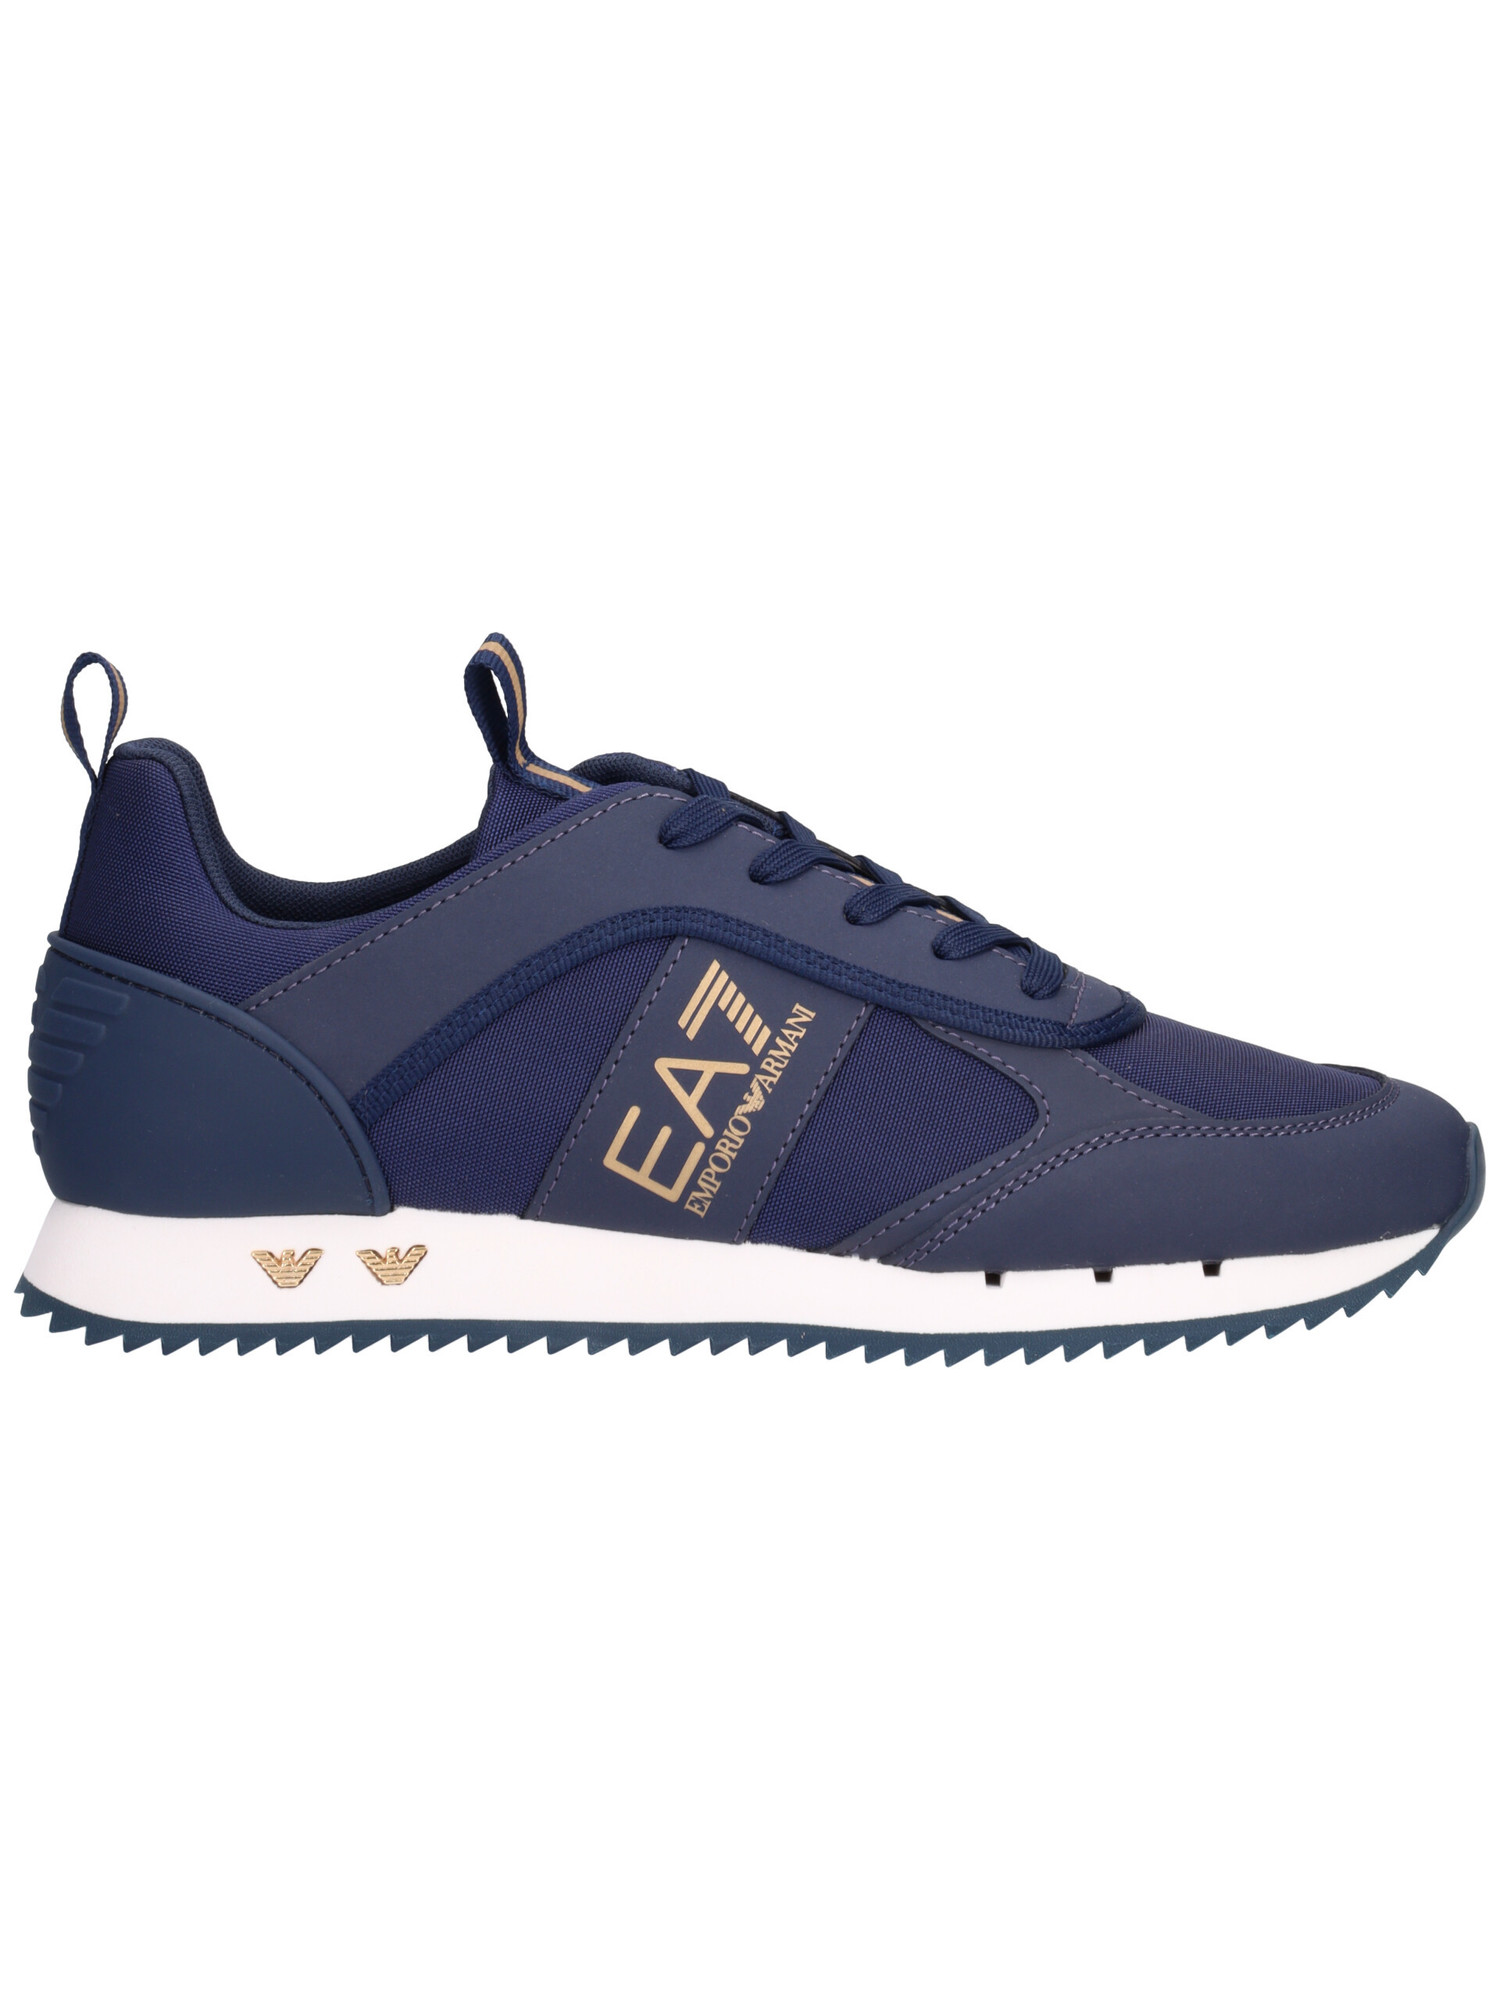 sneaker-emporio-armani-da-uomo-blu-5312b2